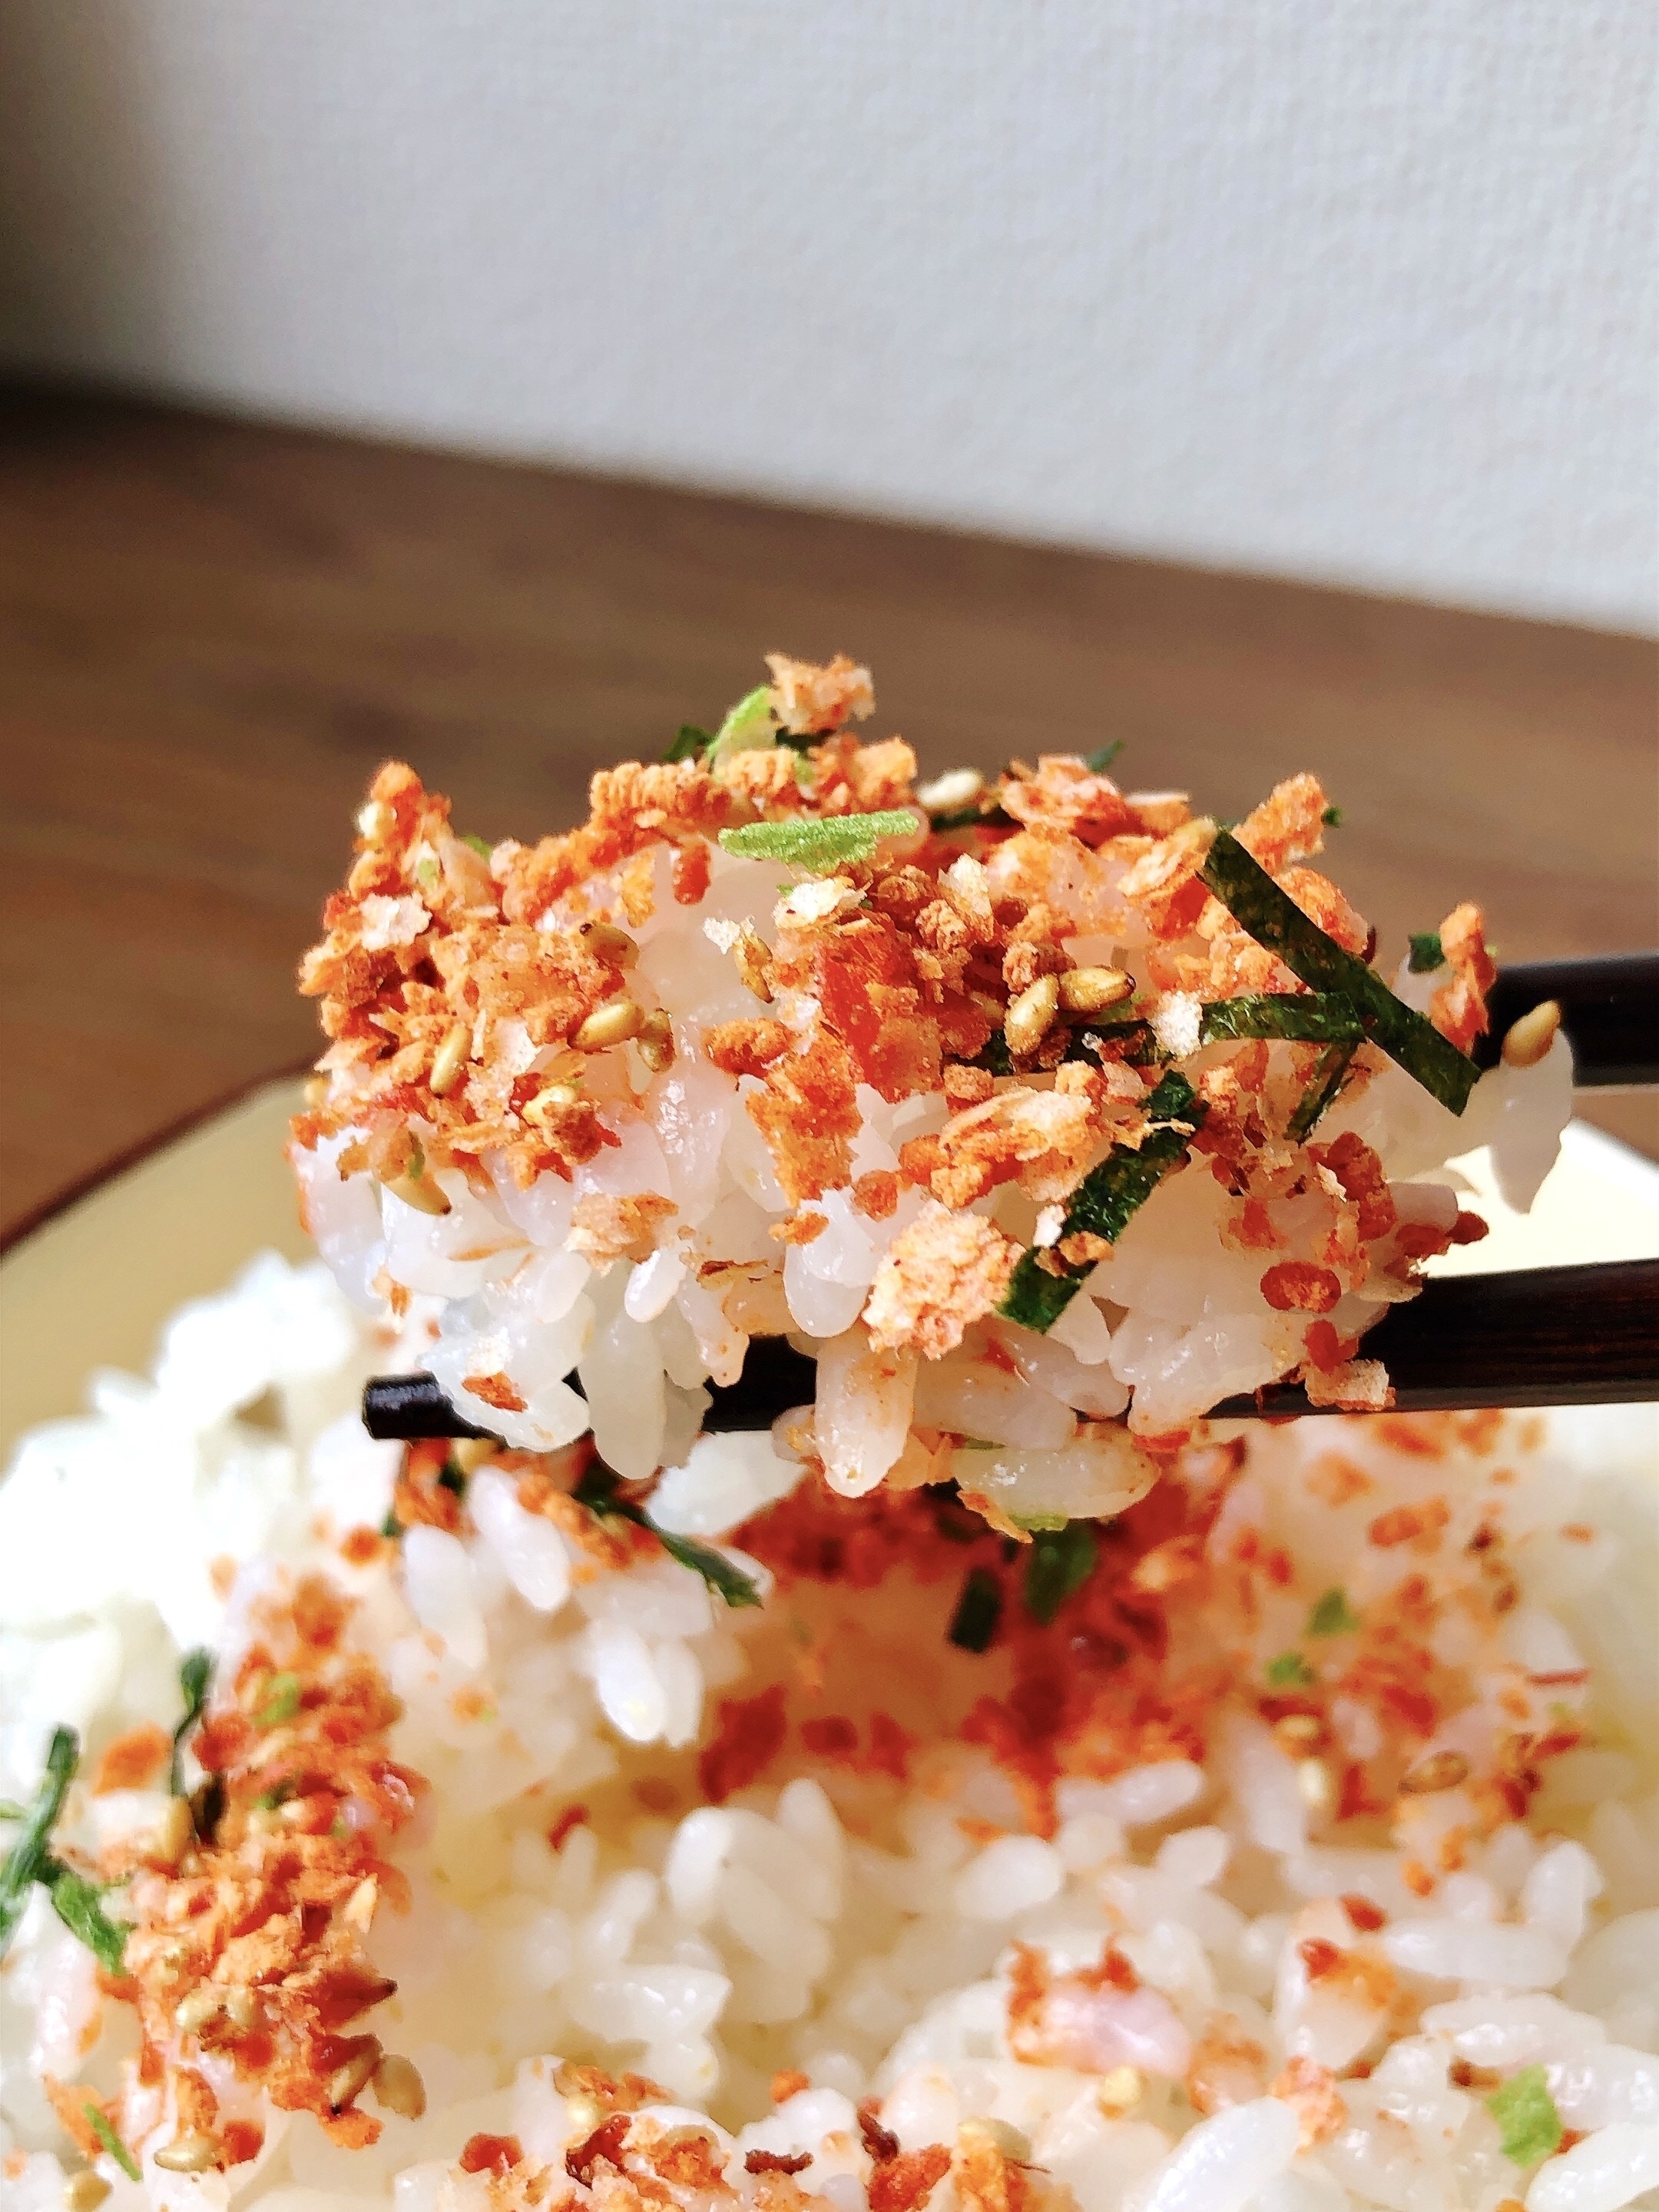 ダイソーのオススメのフード「ニチフリ ご飯がススム キムチ味ふりかけ 20g」